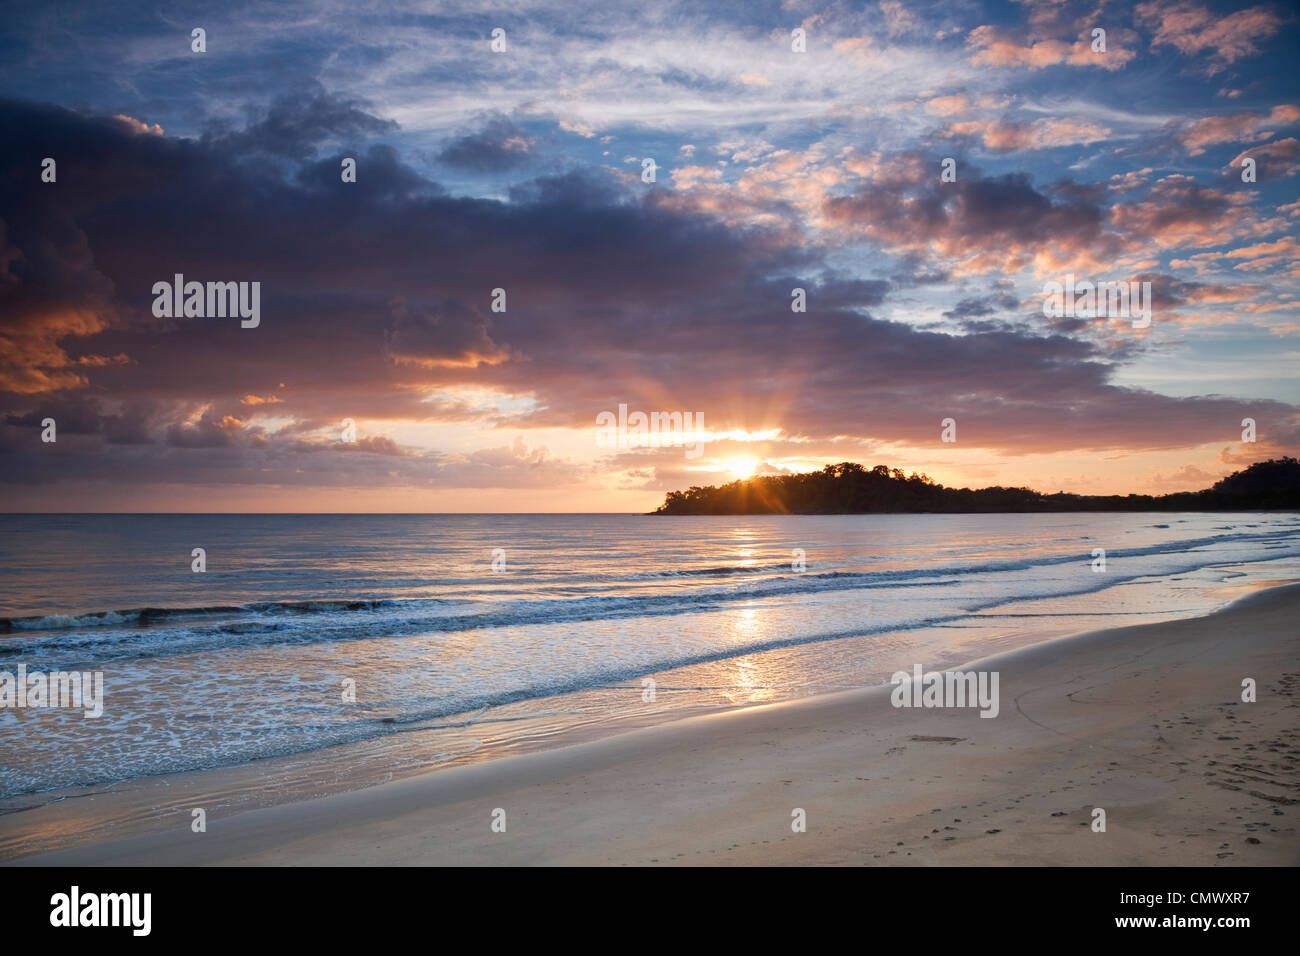 View along beach at dawn. Kewarra Beach, Cairns, Queensland, Australia Stock Photo